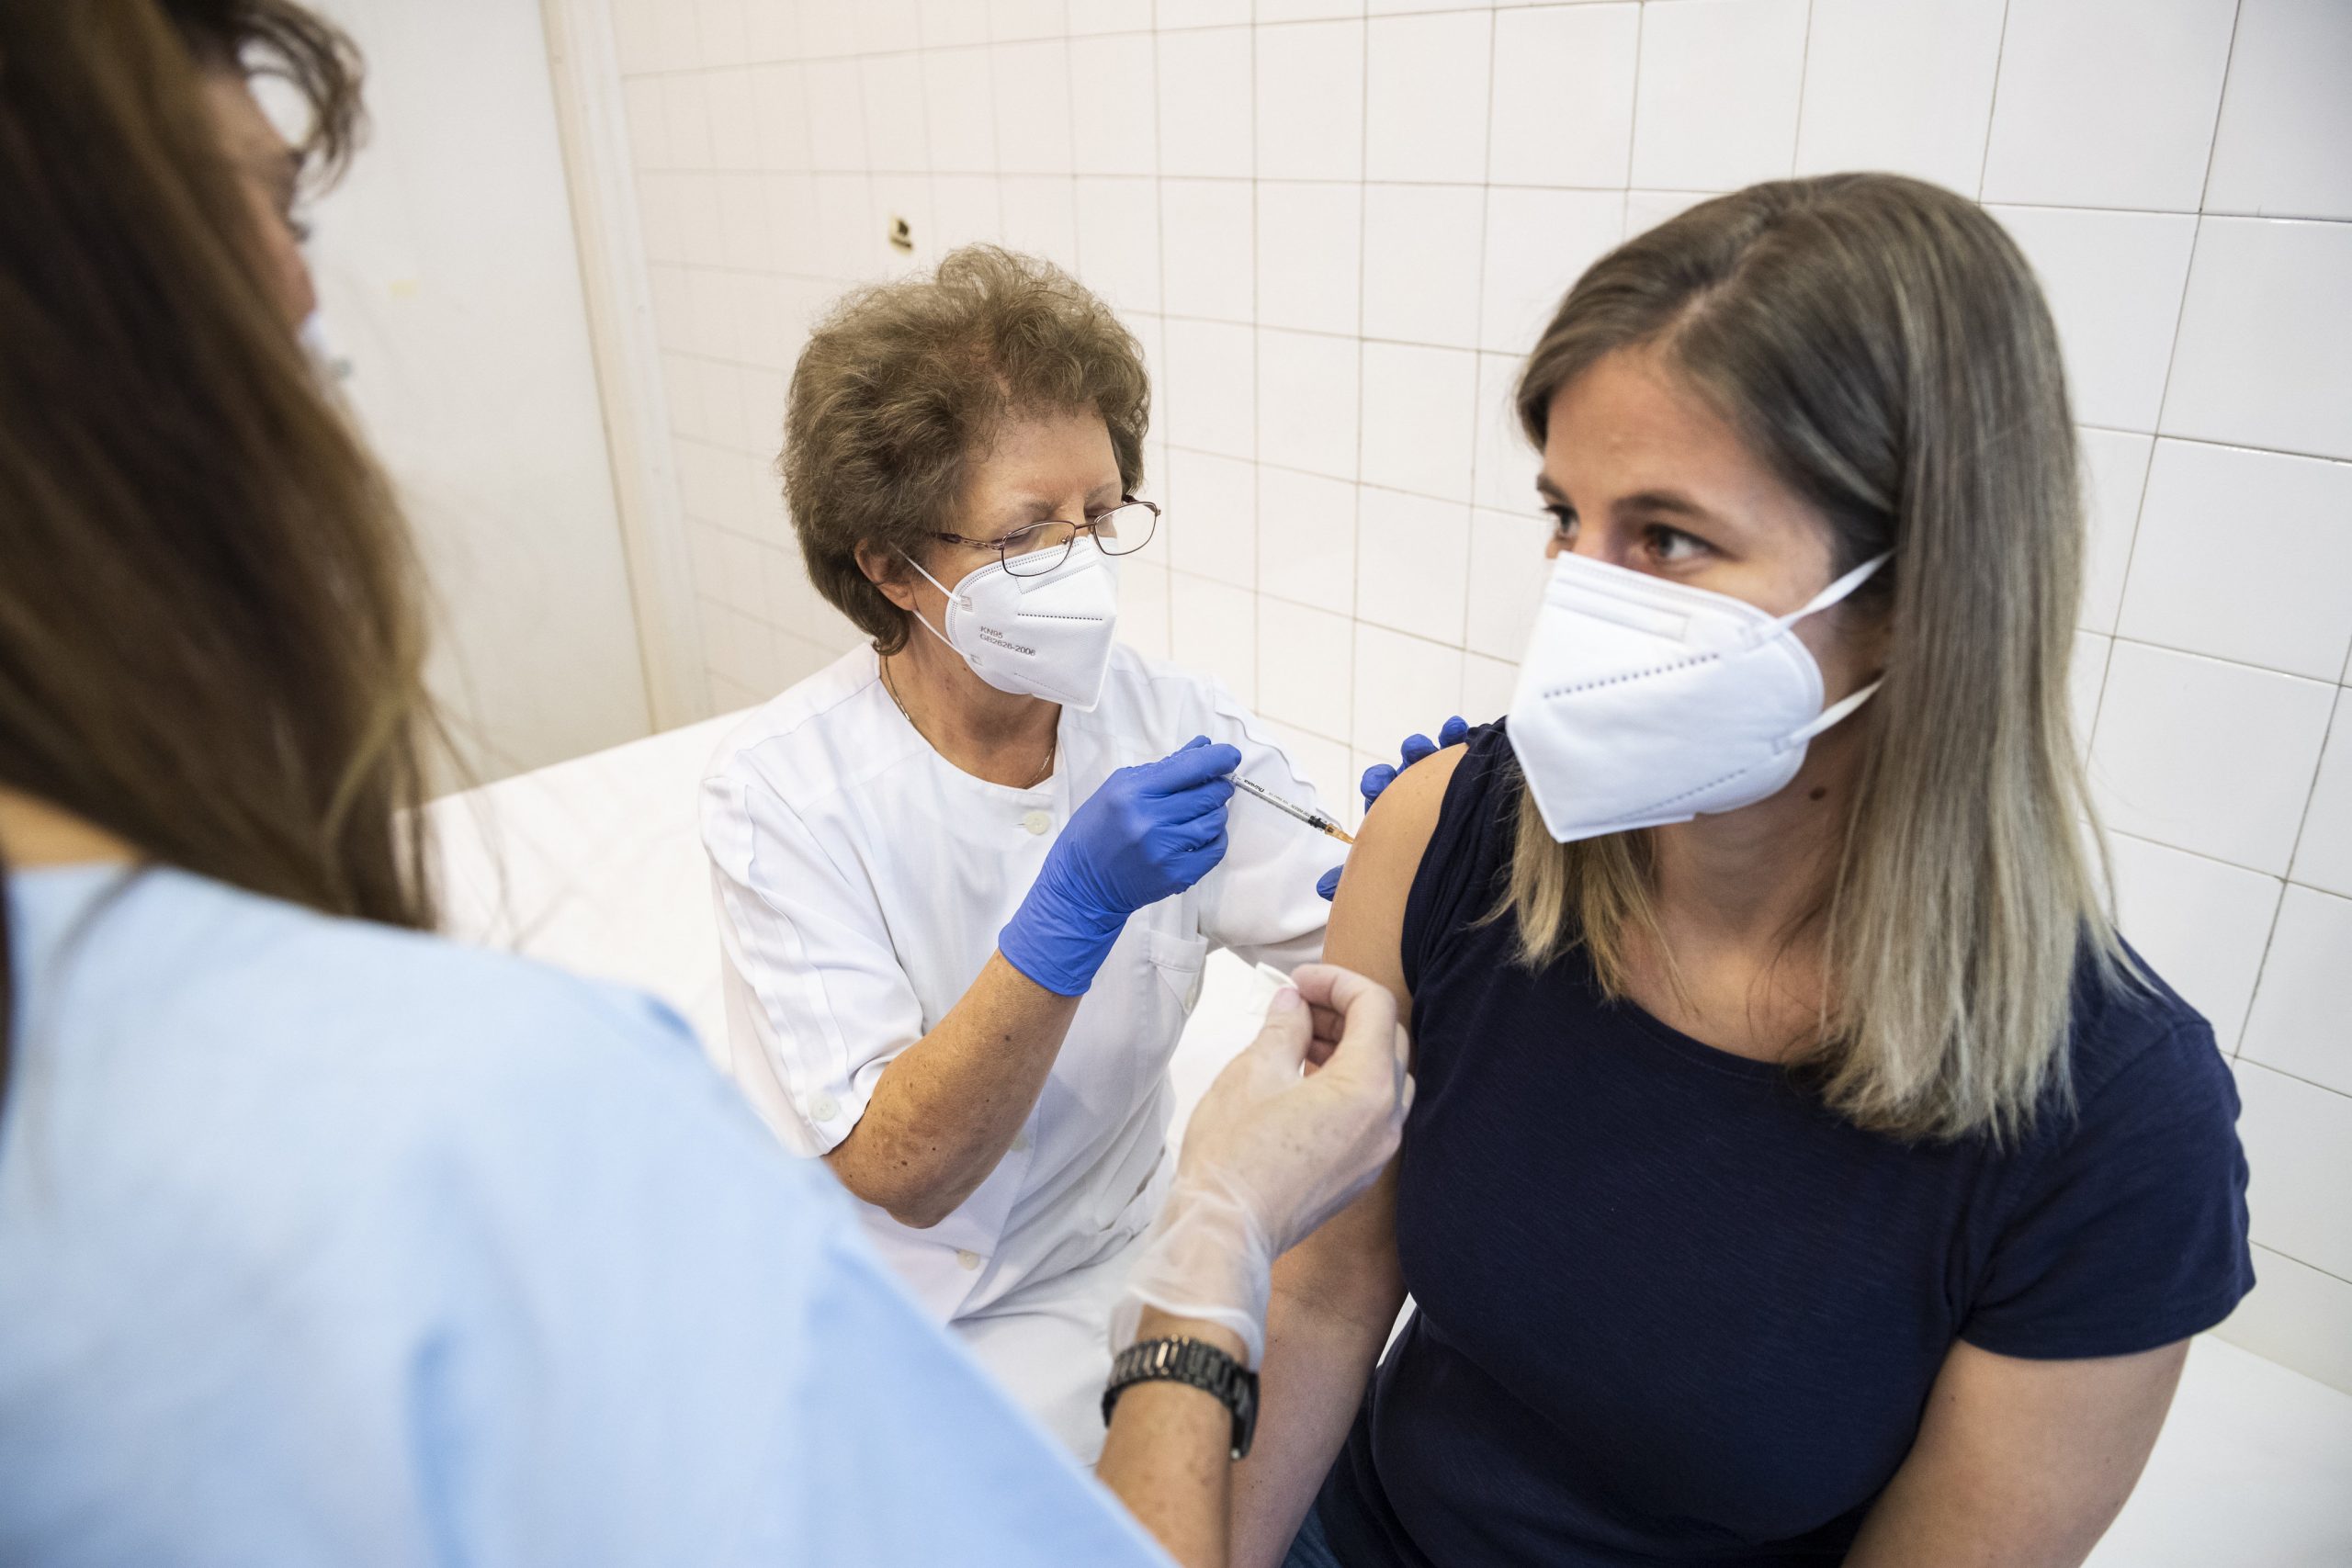 Hungarian Parties Start Campaigning for Coronavirus Vaccine